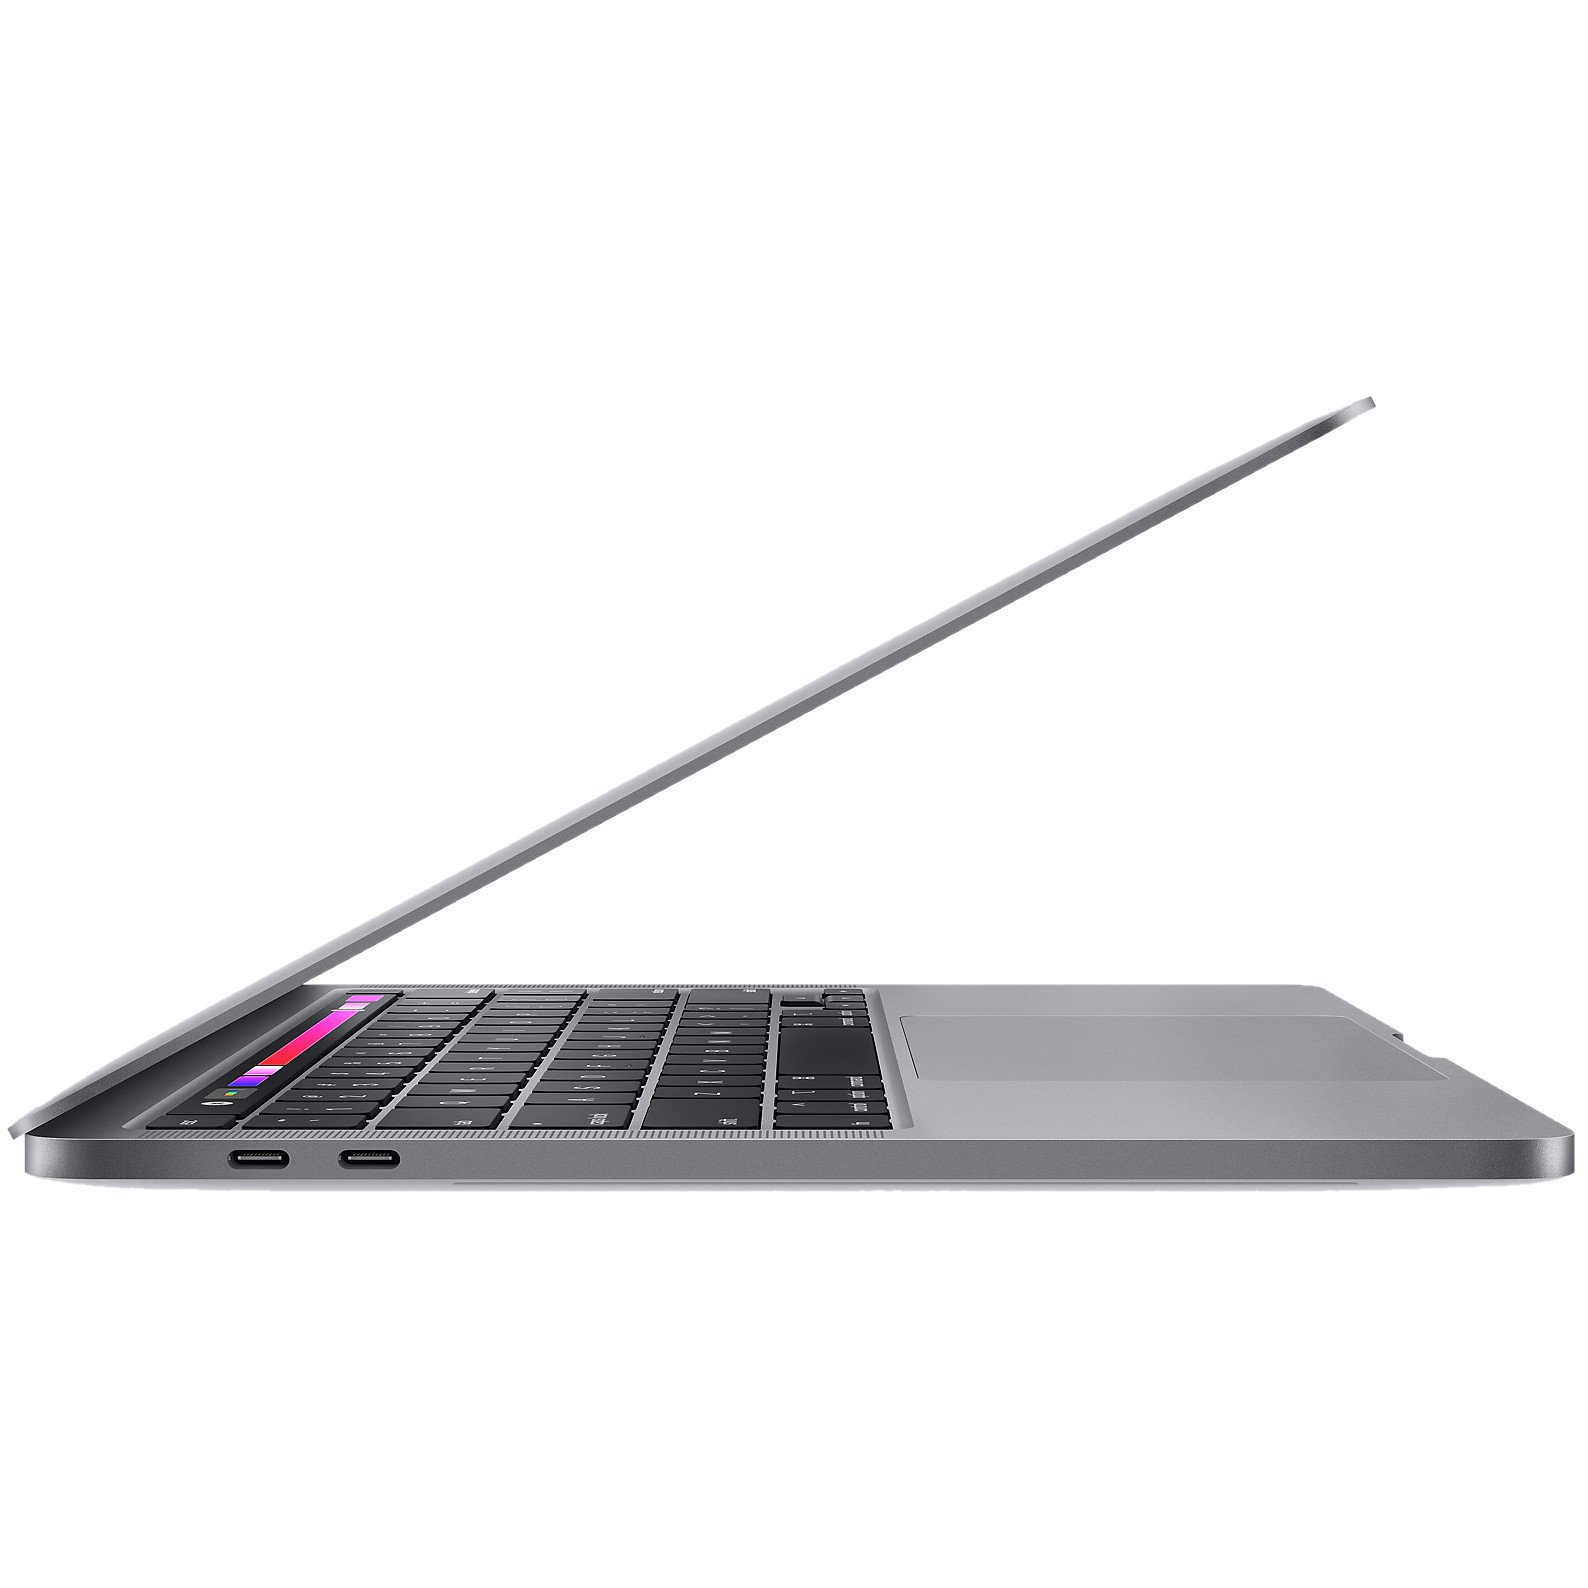 Apple MacBook Pro 13" Space Gray 2018 (Z0V70002G, Z0V7000L8,Z0V800131,Z0V80004K) б/у